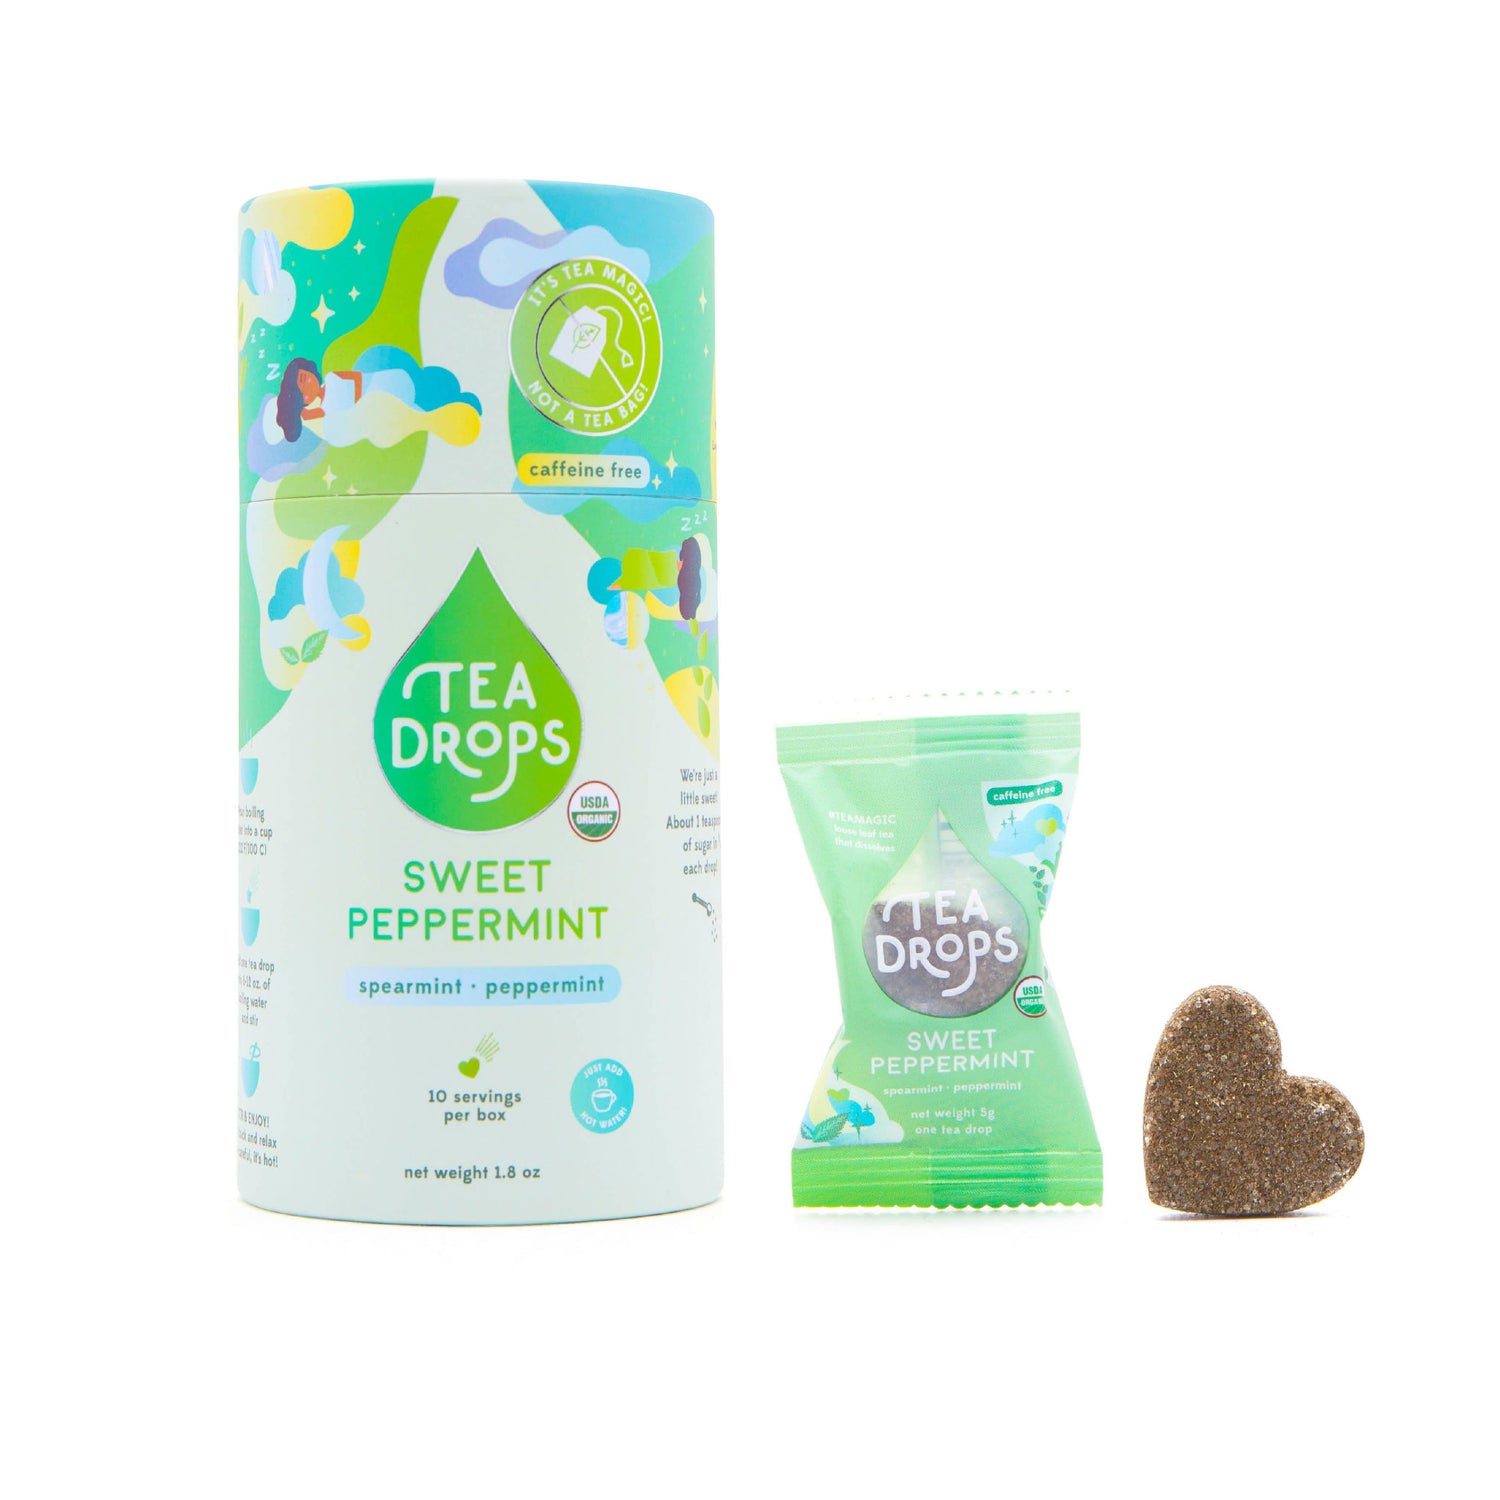 Tea Drops: Sweet Peppermint